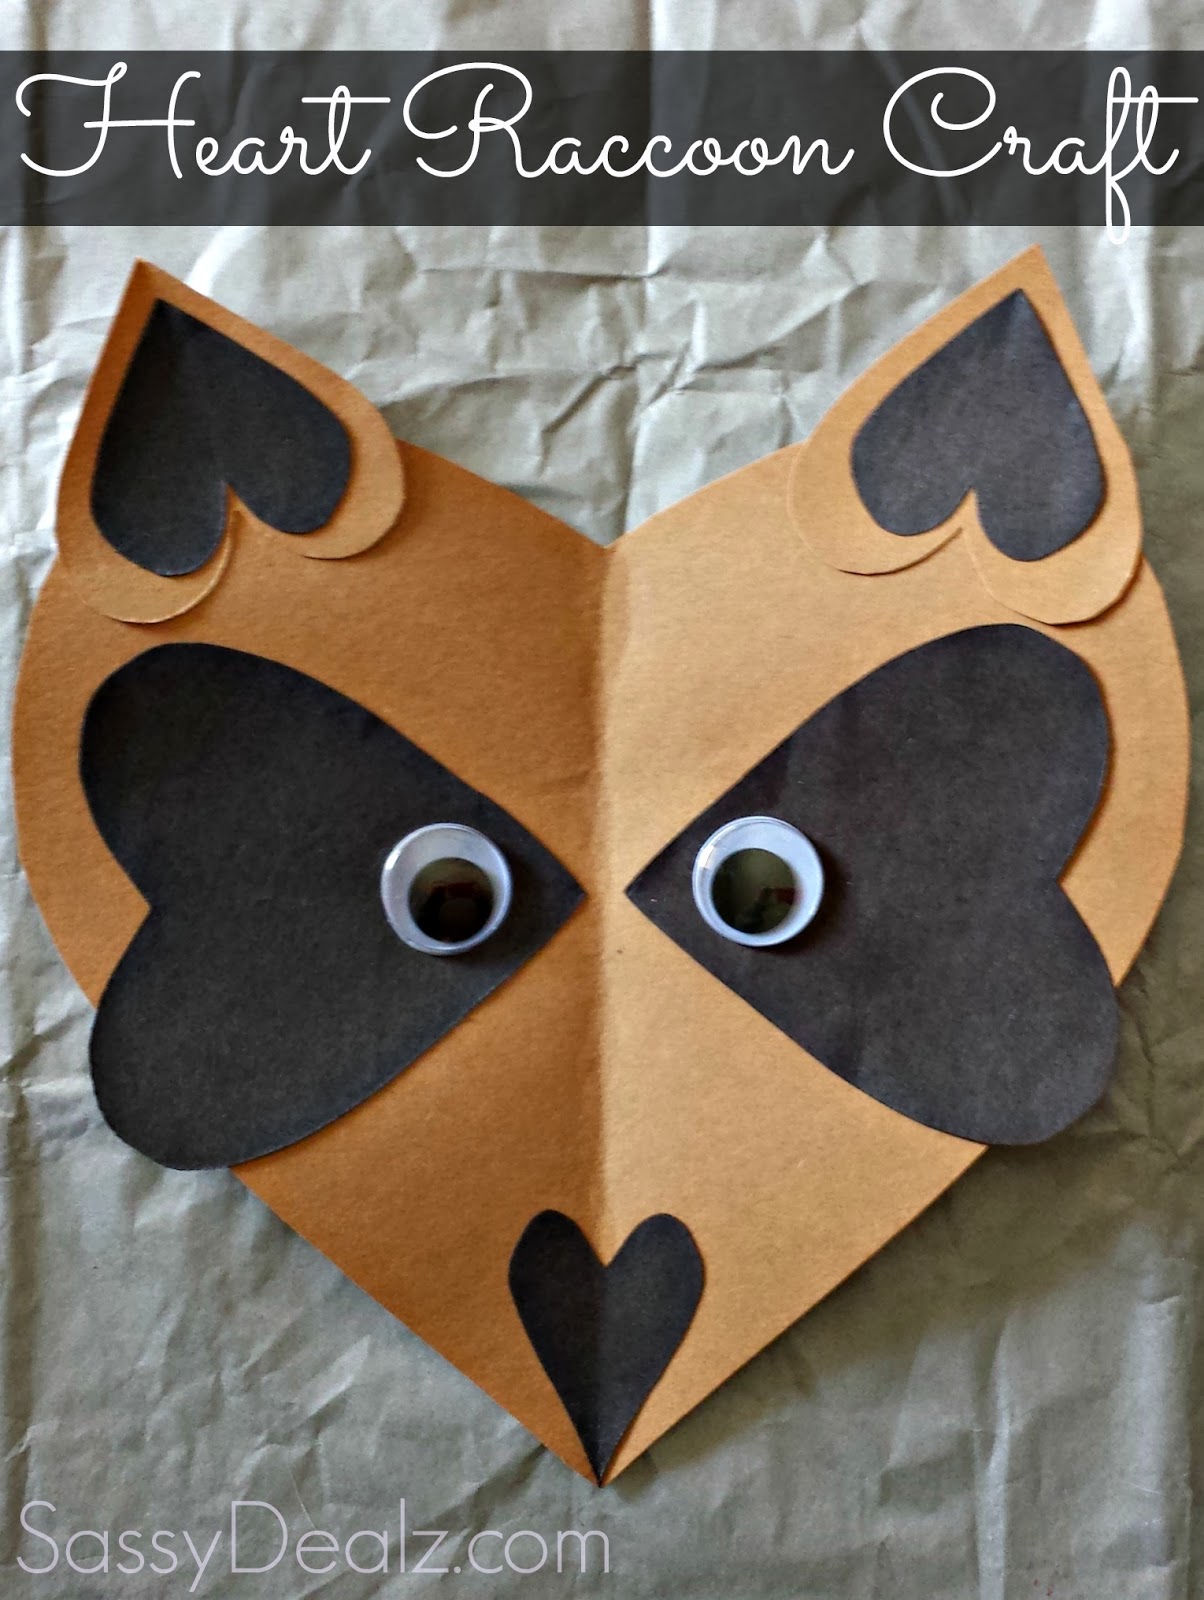 Heart-raccoon-craft-valentine